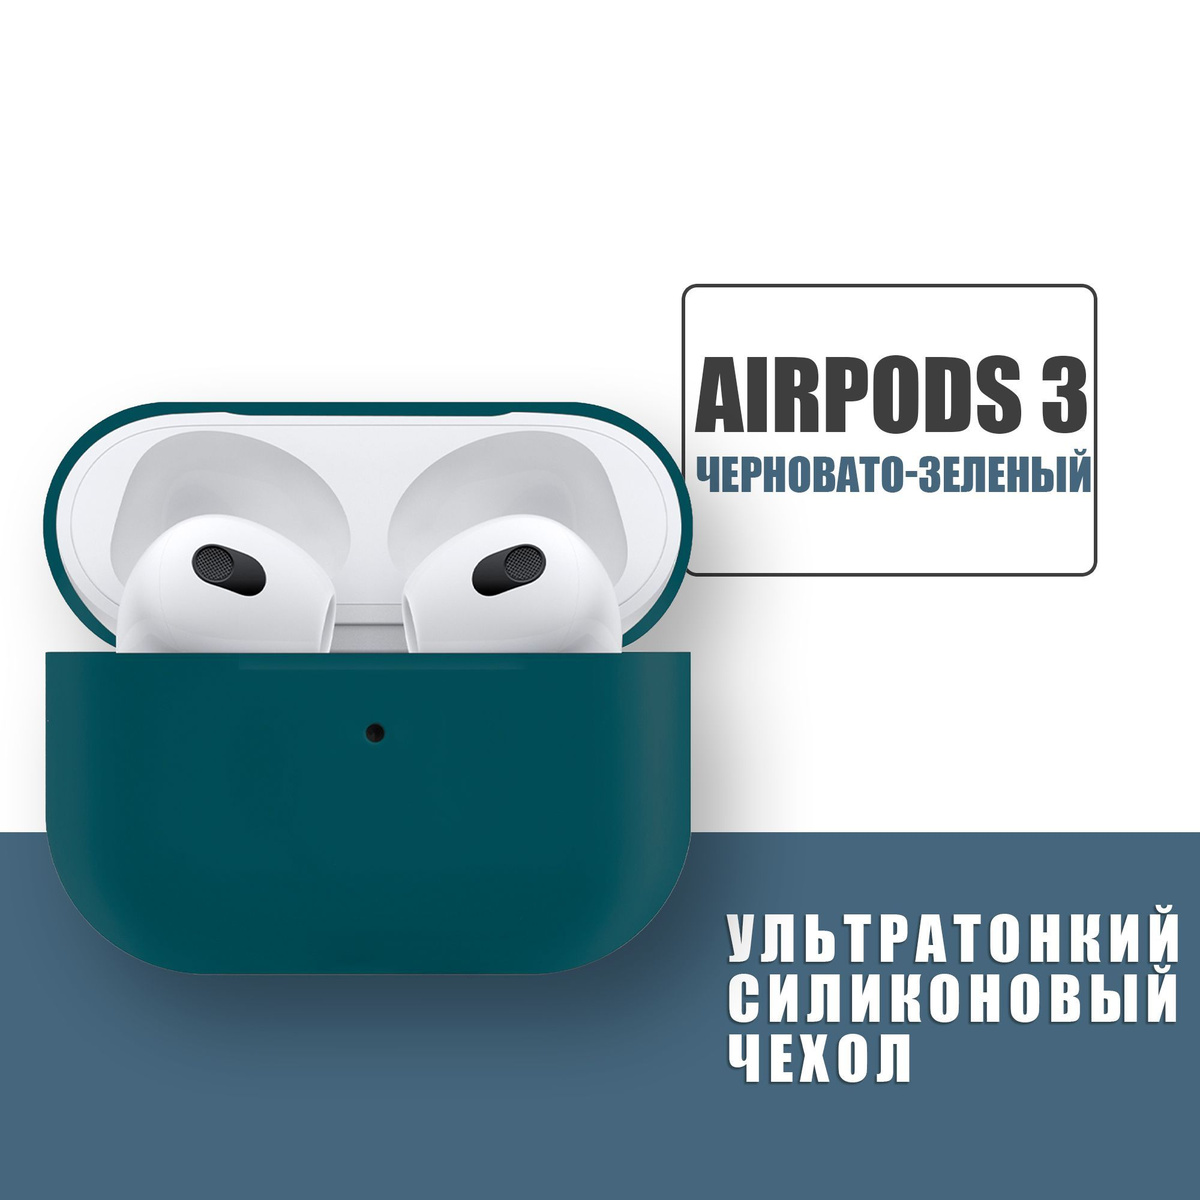 Силиконовый ультратонкий чехол для наушников AirPods 3, Аирподс 3, Черновато-Зеленый